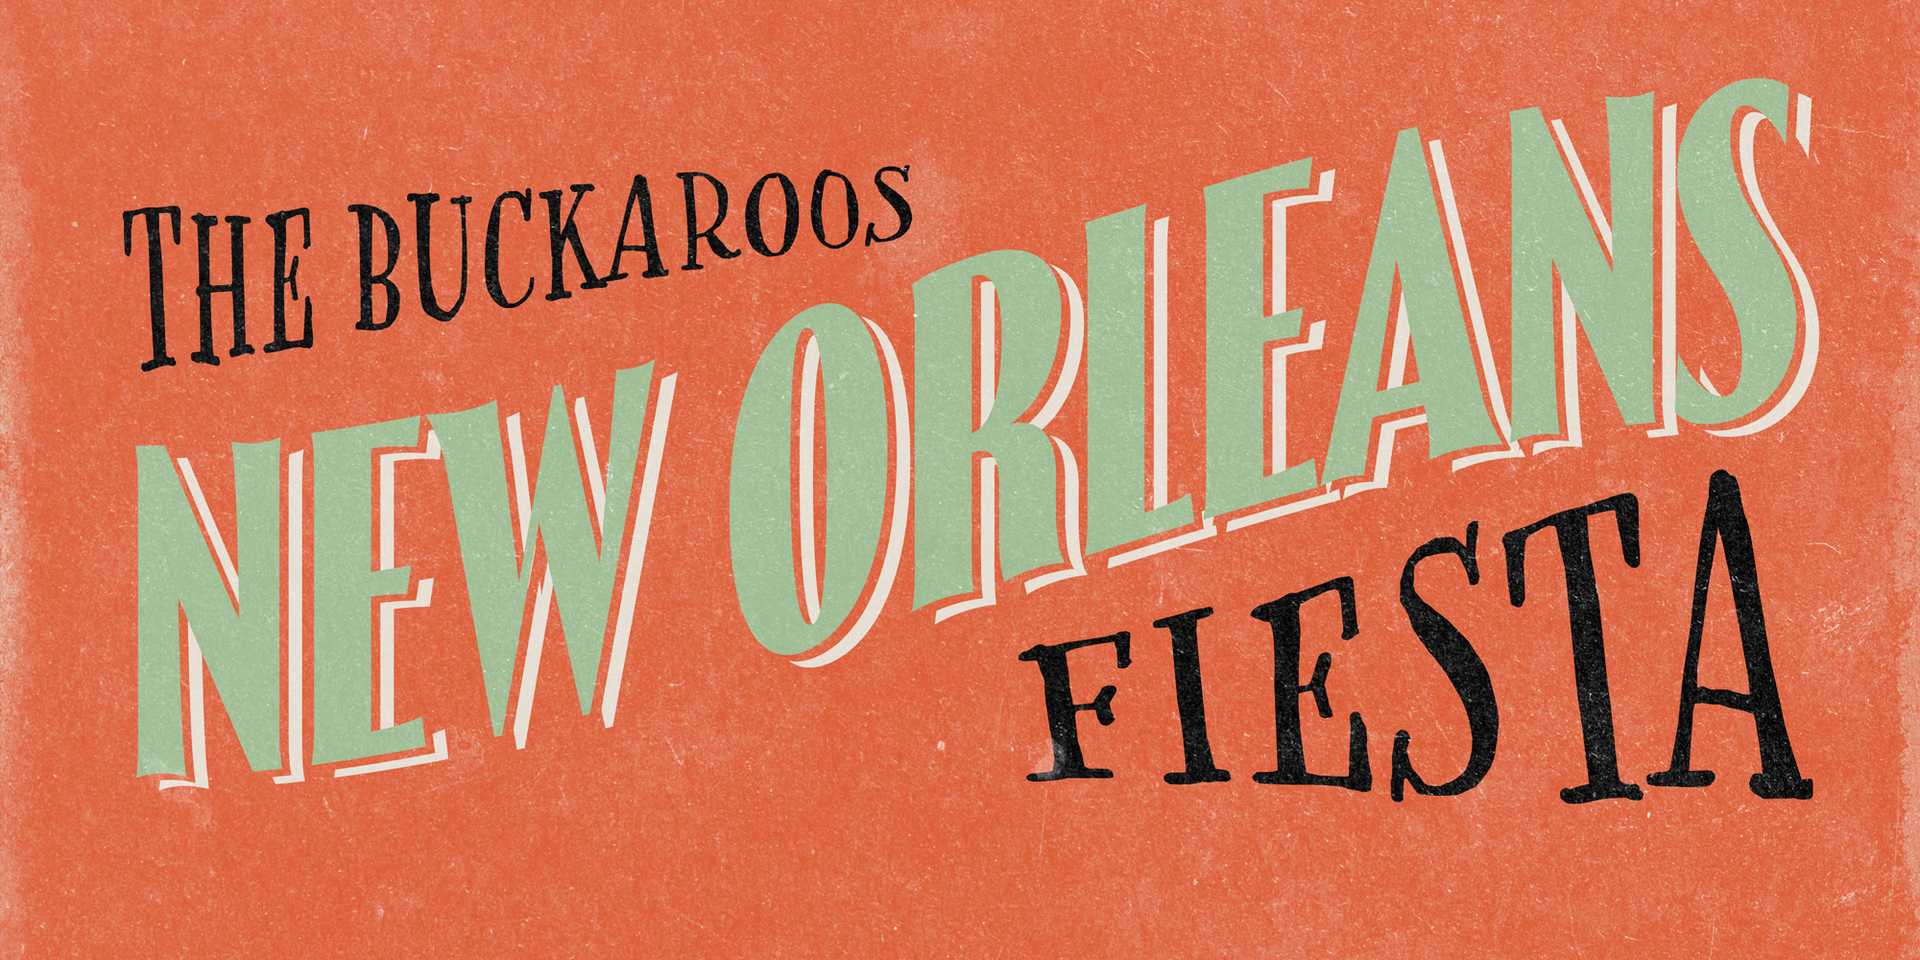 Buckaroos New Orleans Fiesta